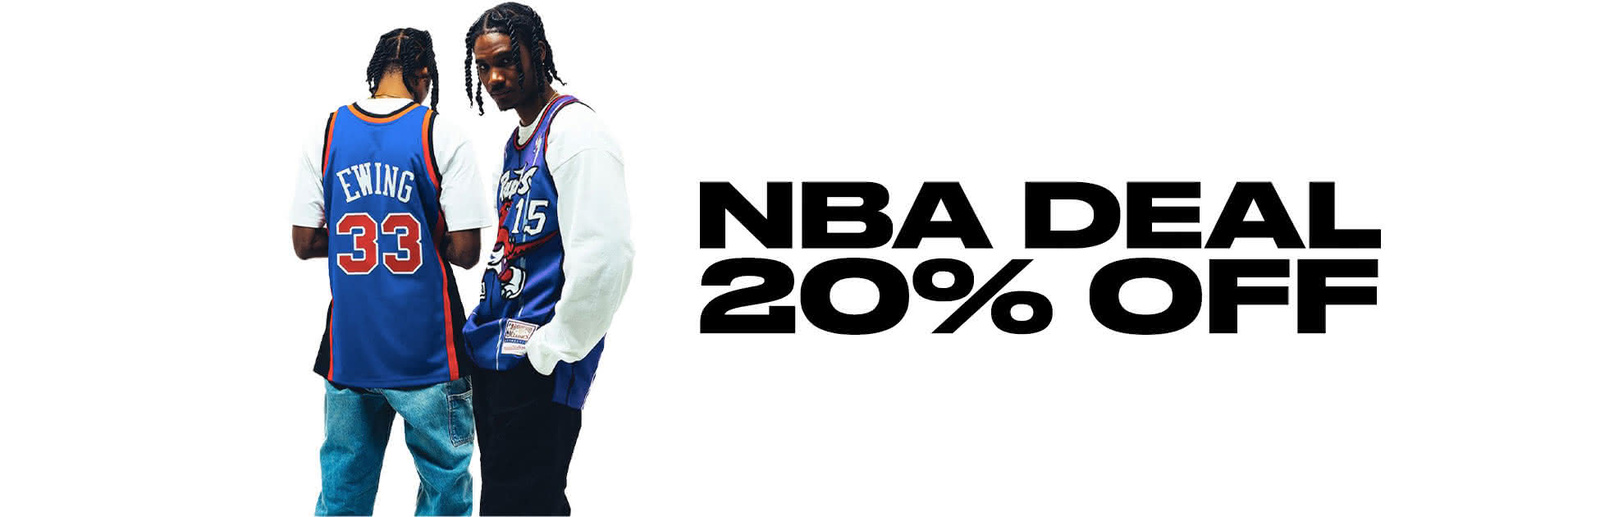  NBA DEAL 20% OFF